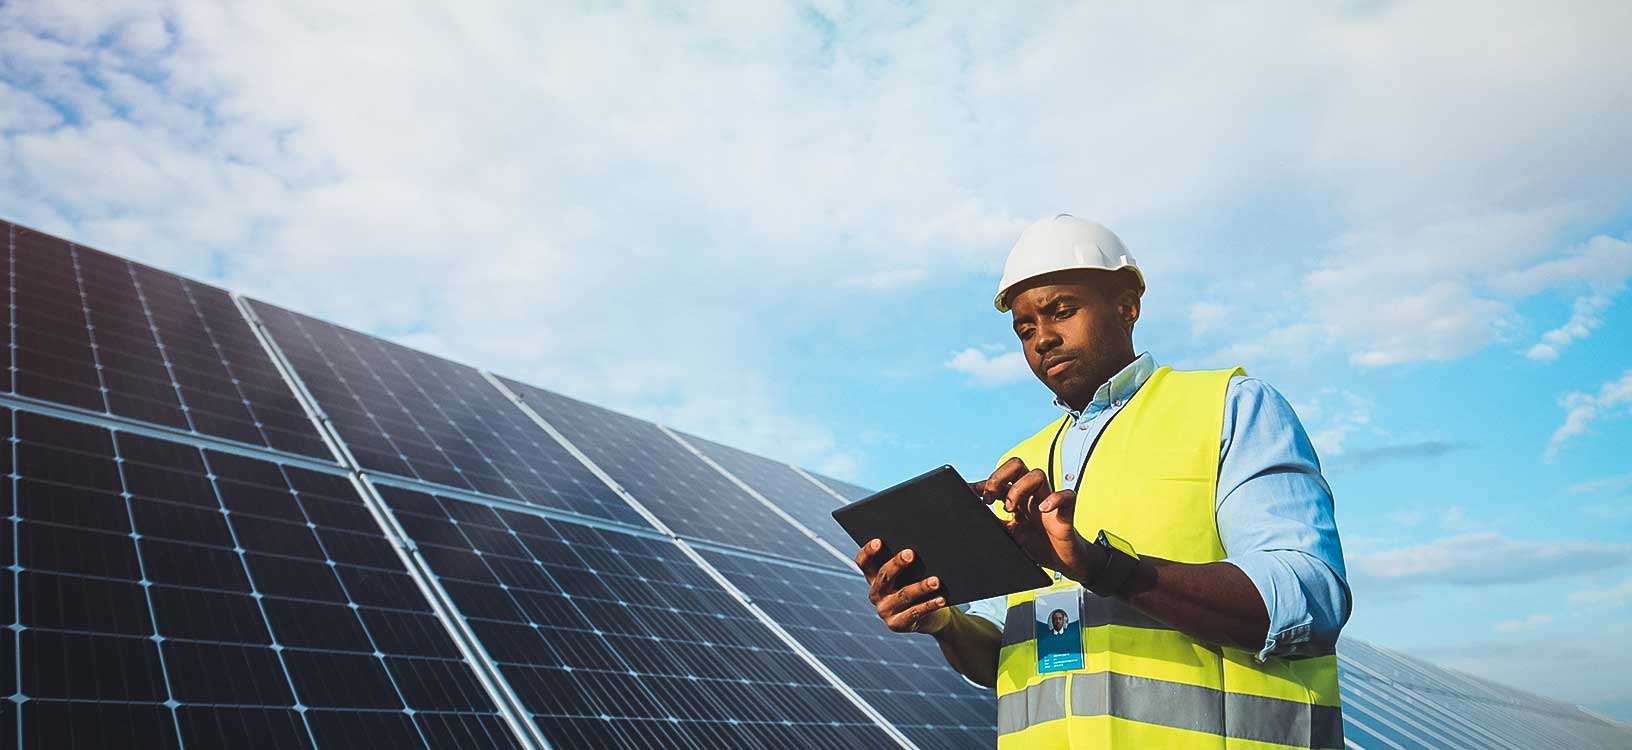 Responsabile delle operazioni che controlla lo stato operativo corrente di un impianto solare utilizzando un tablet.